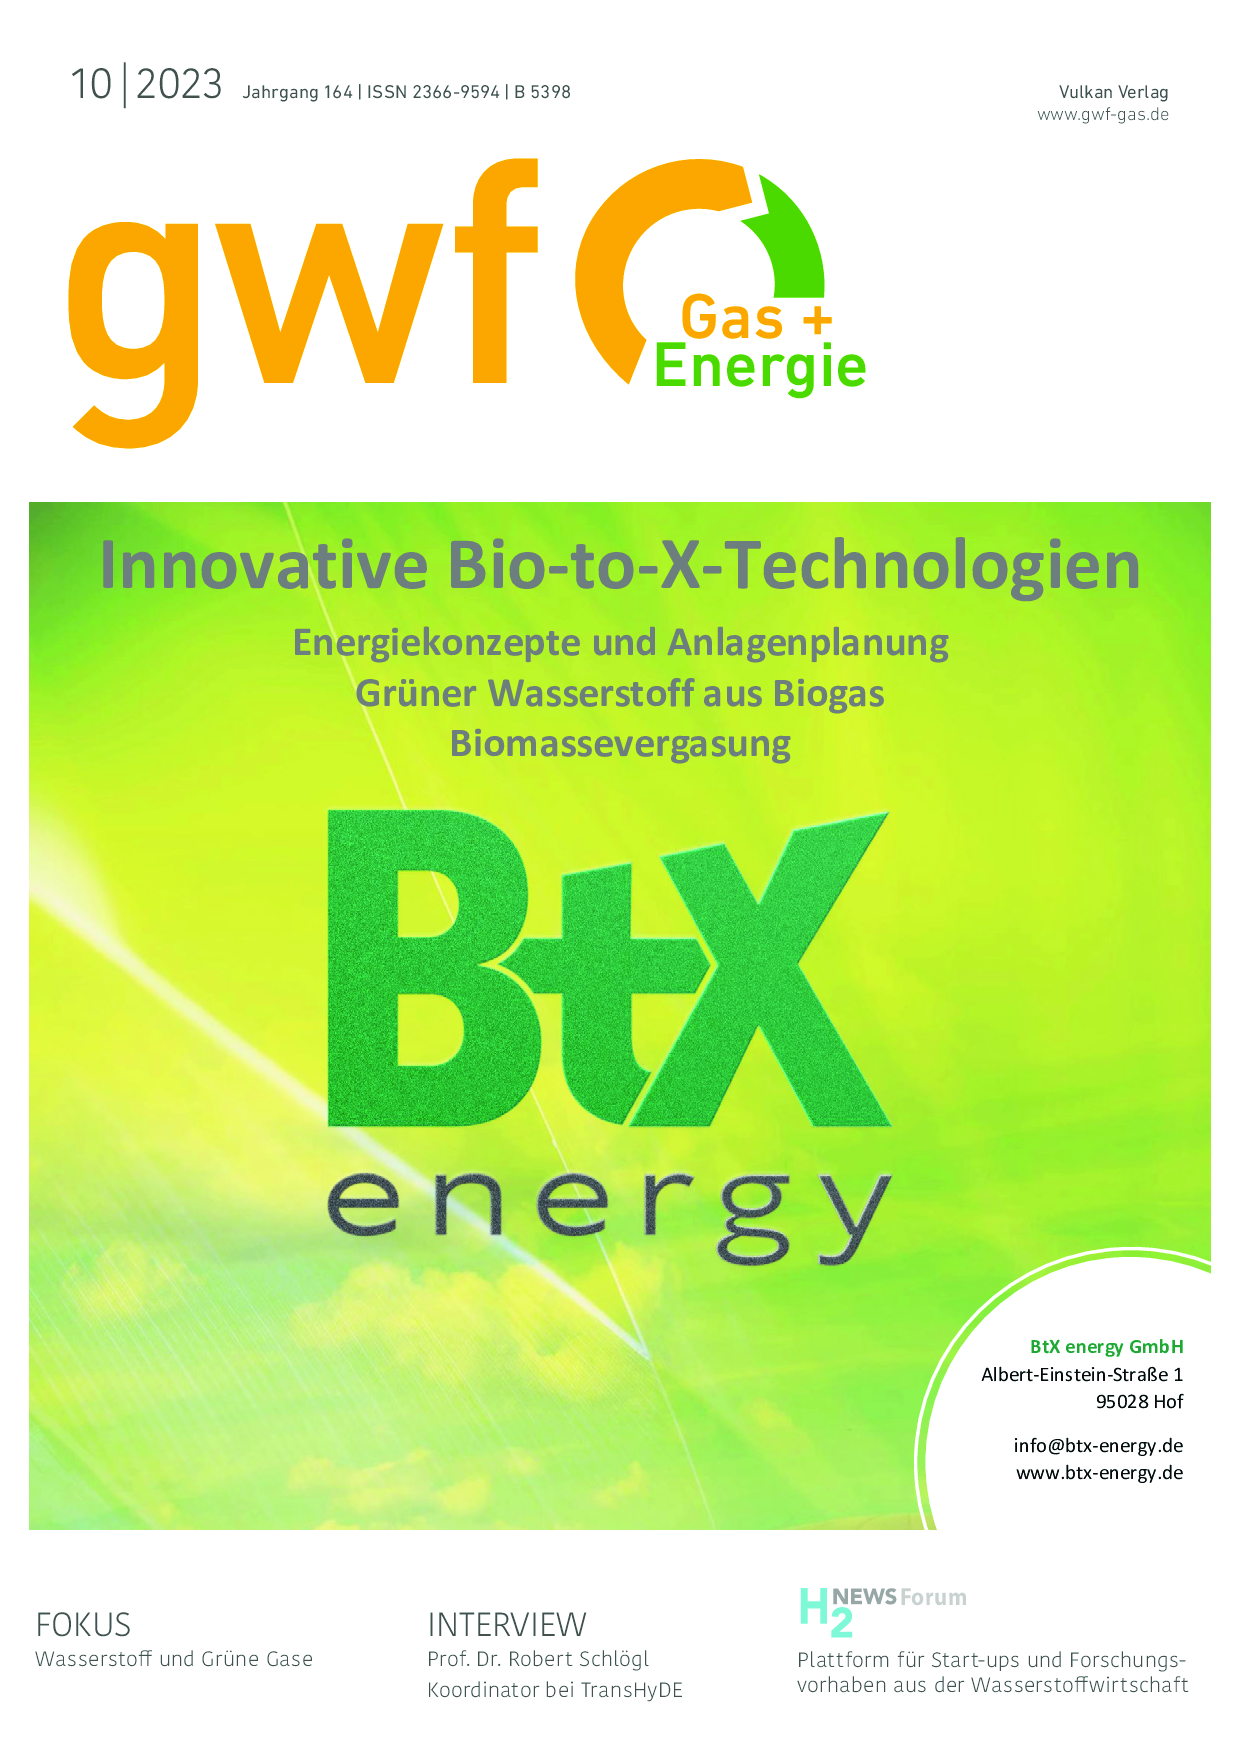 gwf Gas+Energie - 10 2023